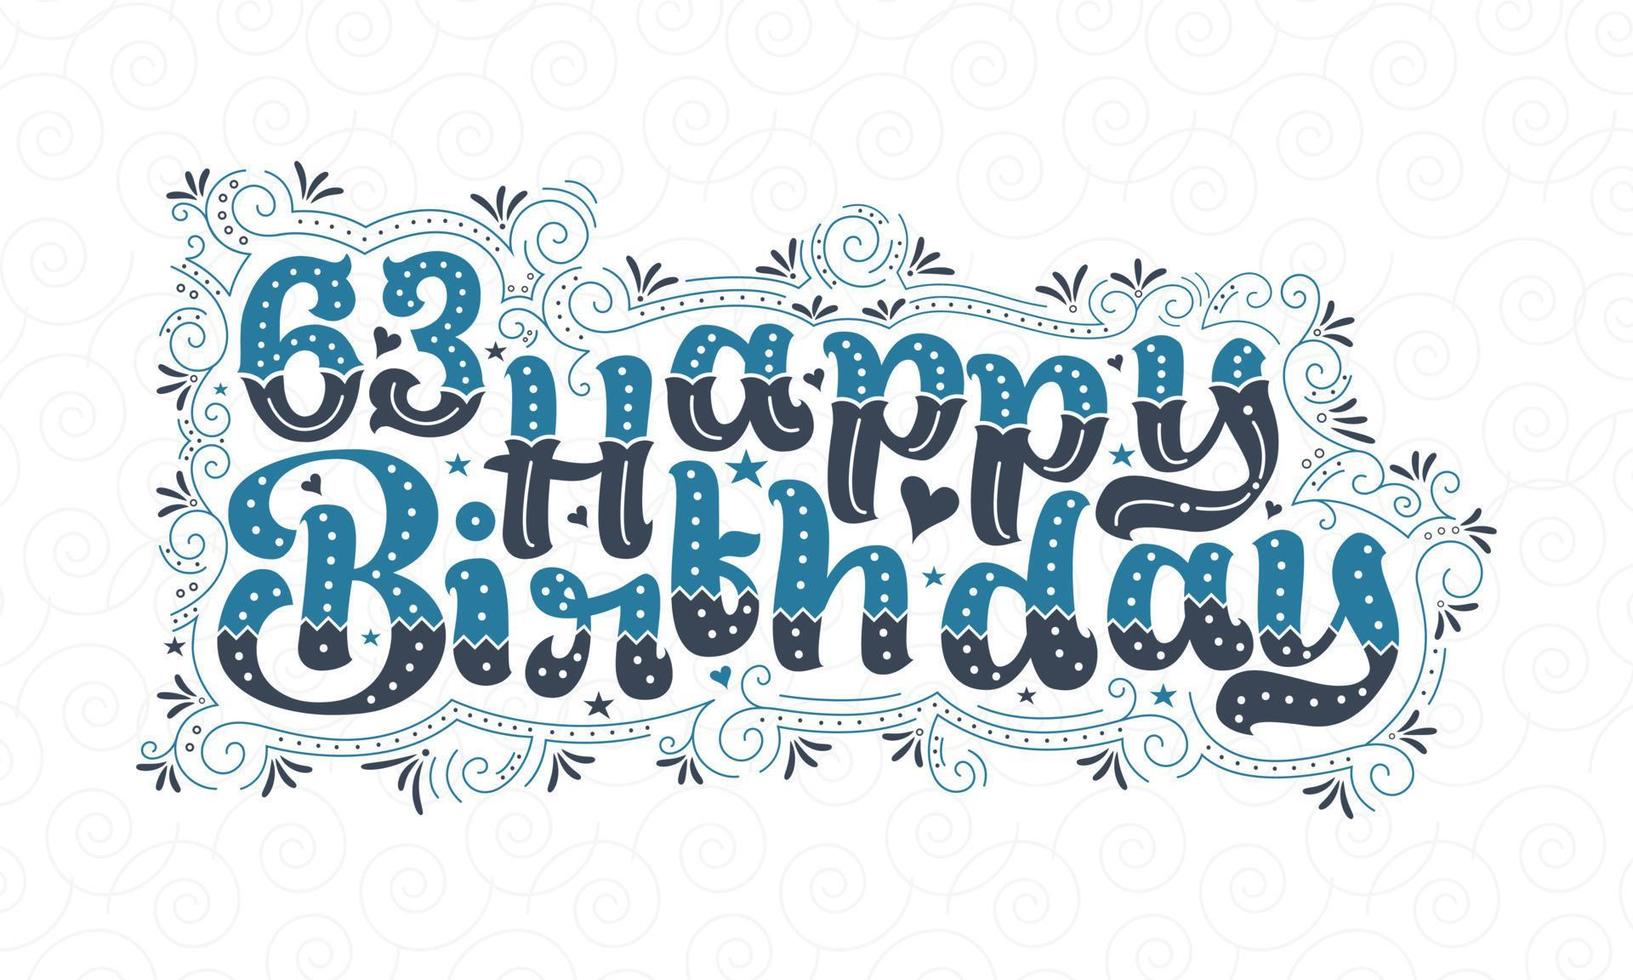 63. Happy Birthday Schriftzug, 63 Jahre Geburtstag schönes Typografie-Design mit blauen und schwarzen Punkten, Linien und Blättern. vektor